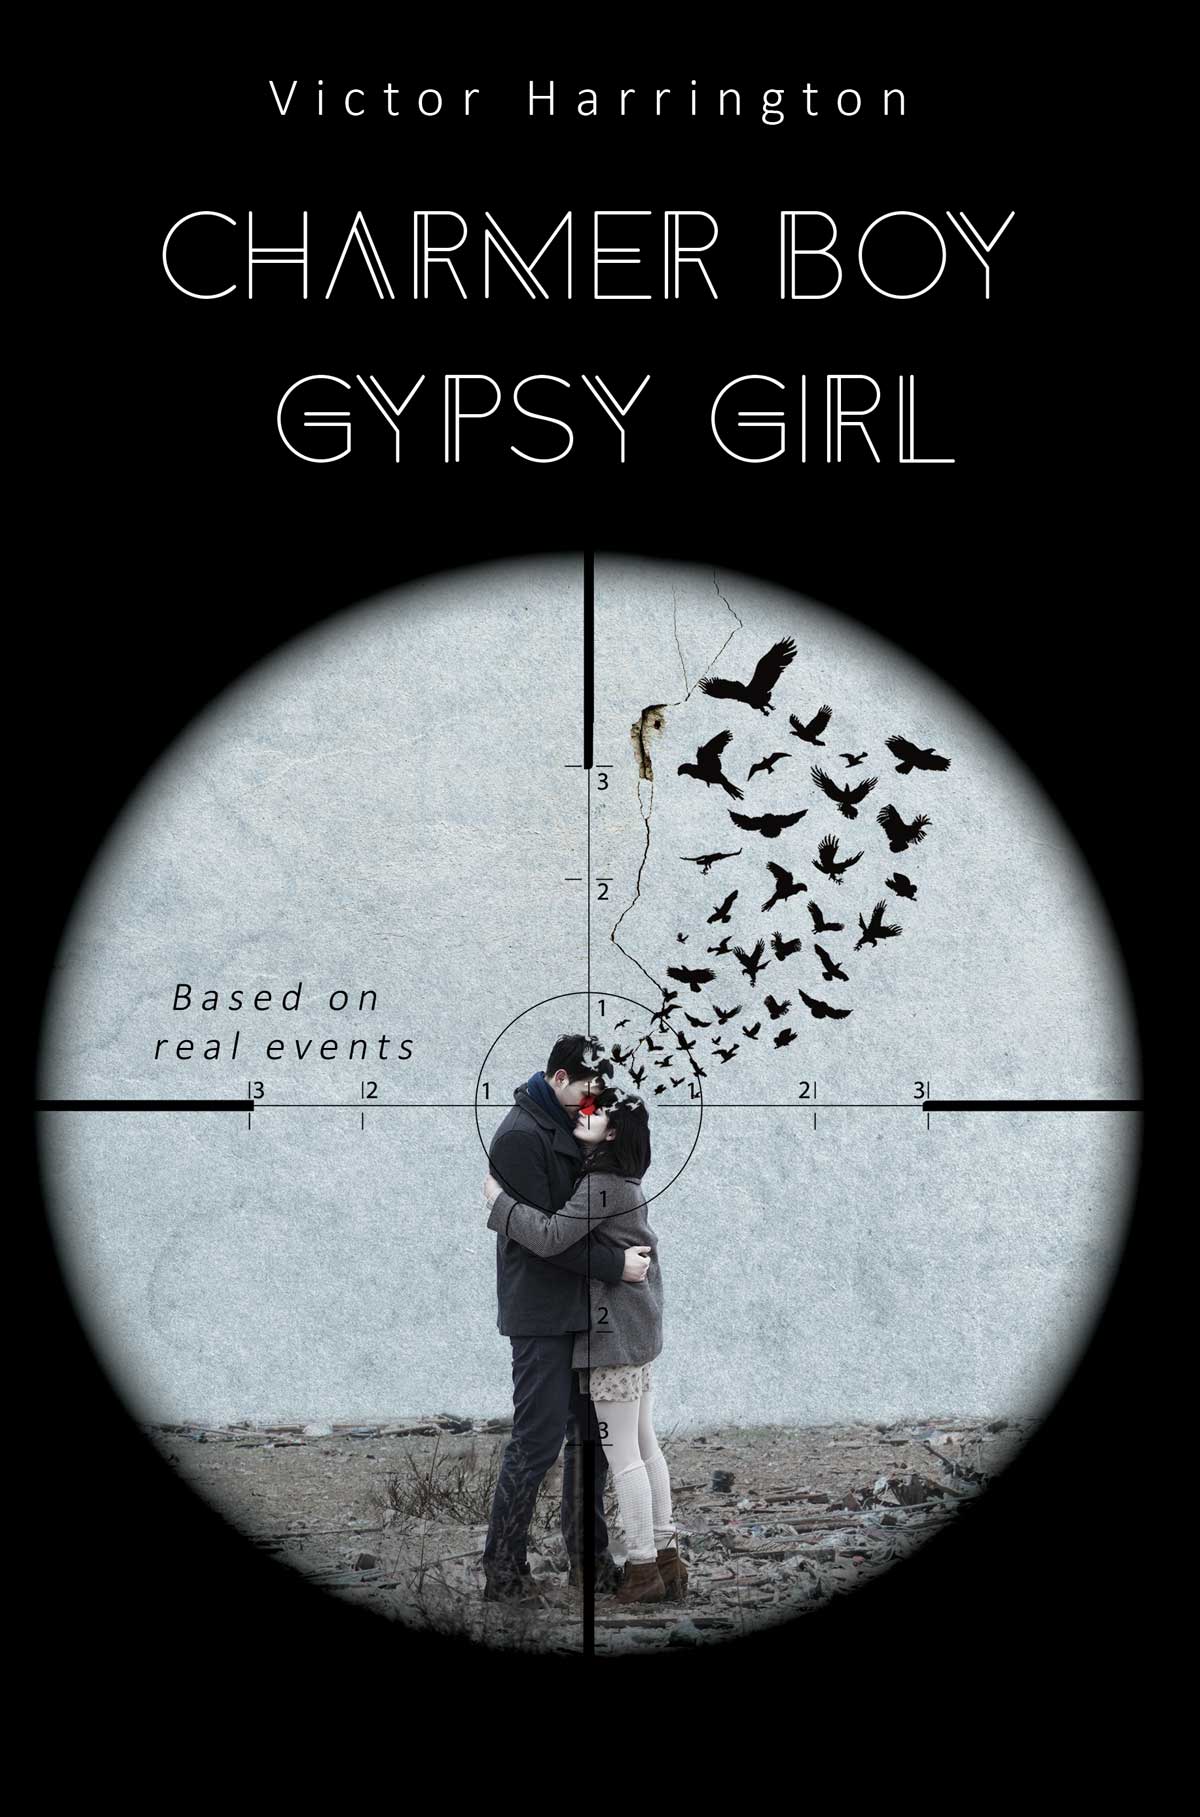 Charmer Boy Gypsy Girl by Victor Harrington